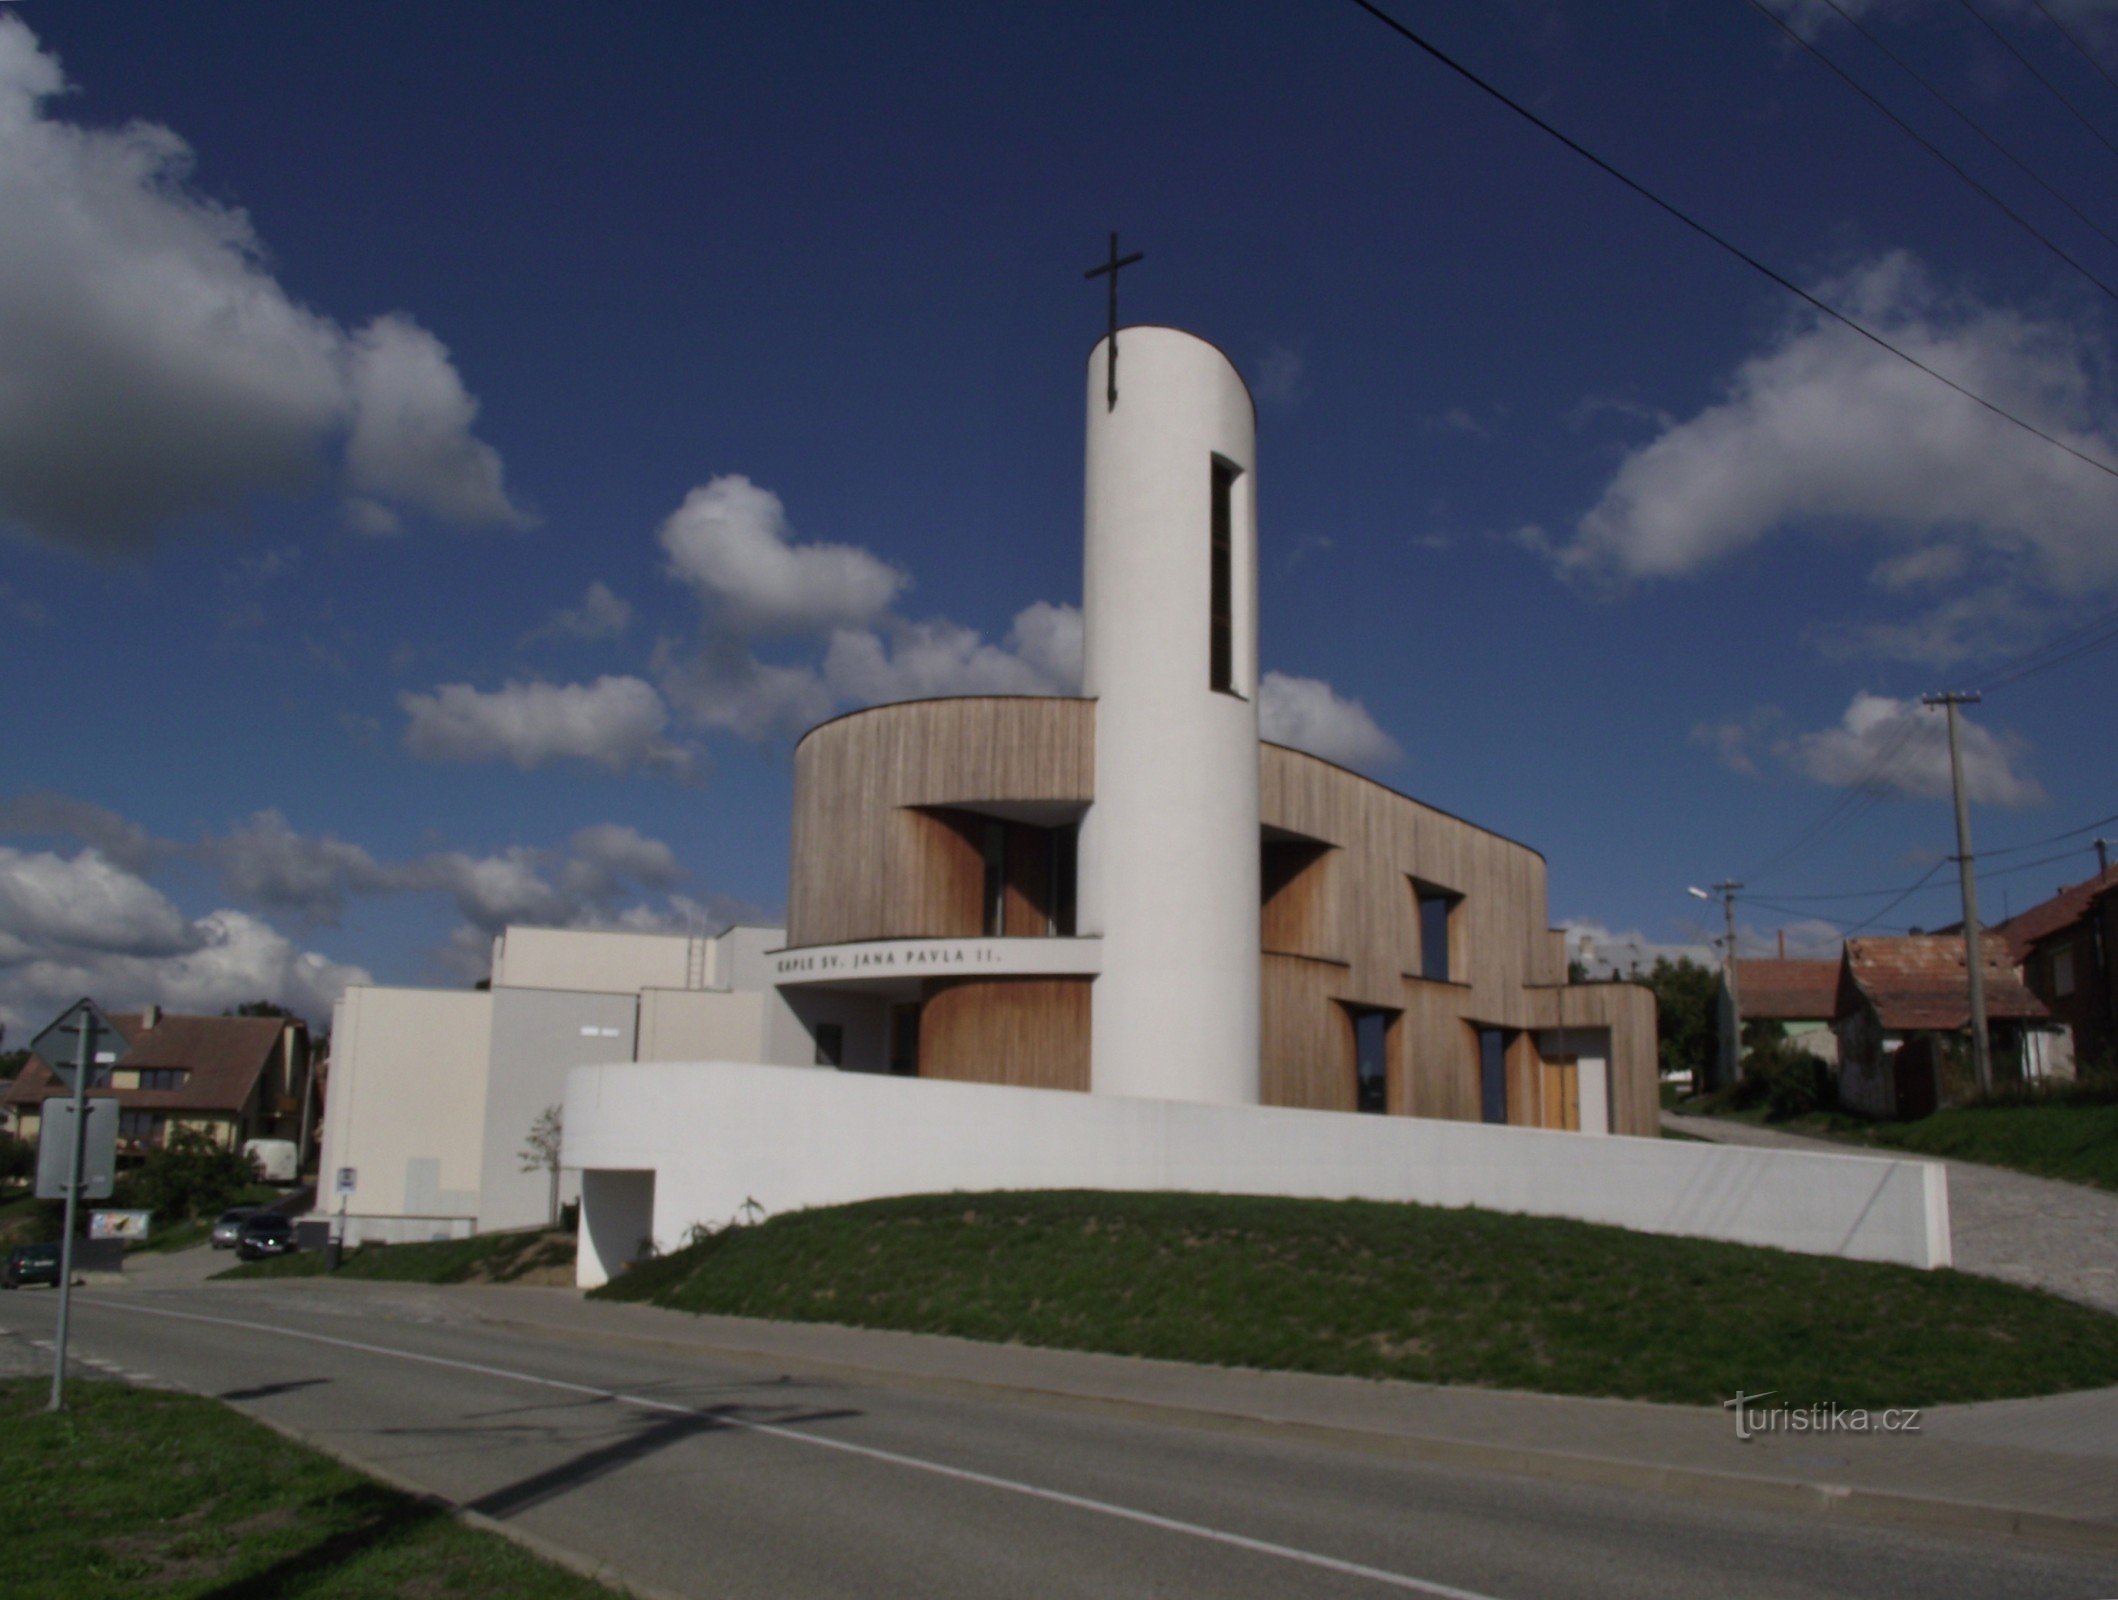 Bukovany (lähellä Kyjovia) - Pyhän Tapanin kappeli. Johannes Paavali II